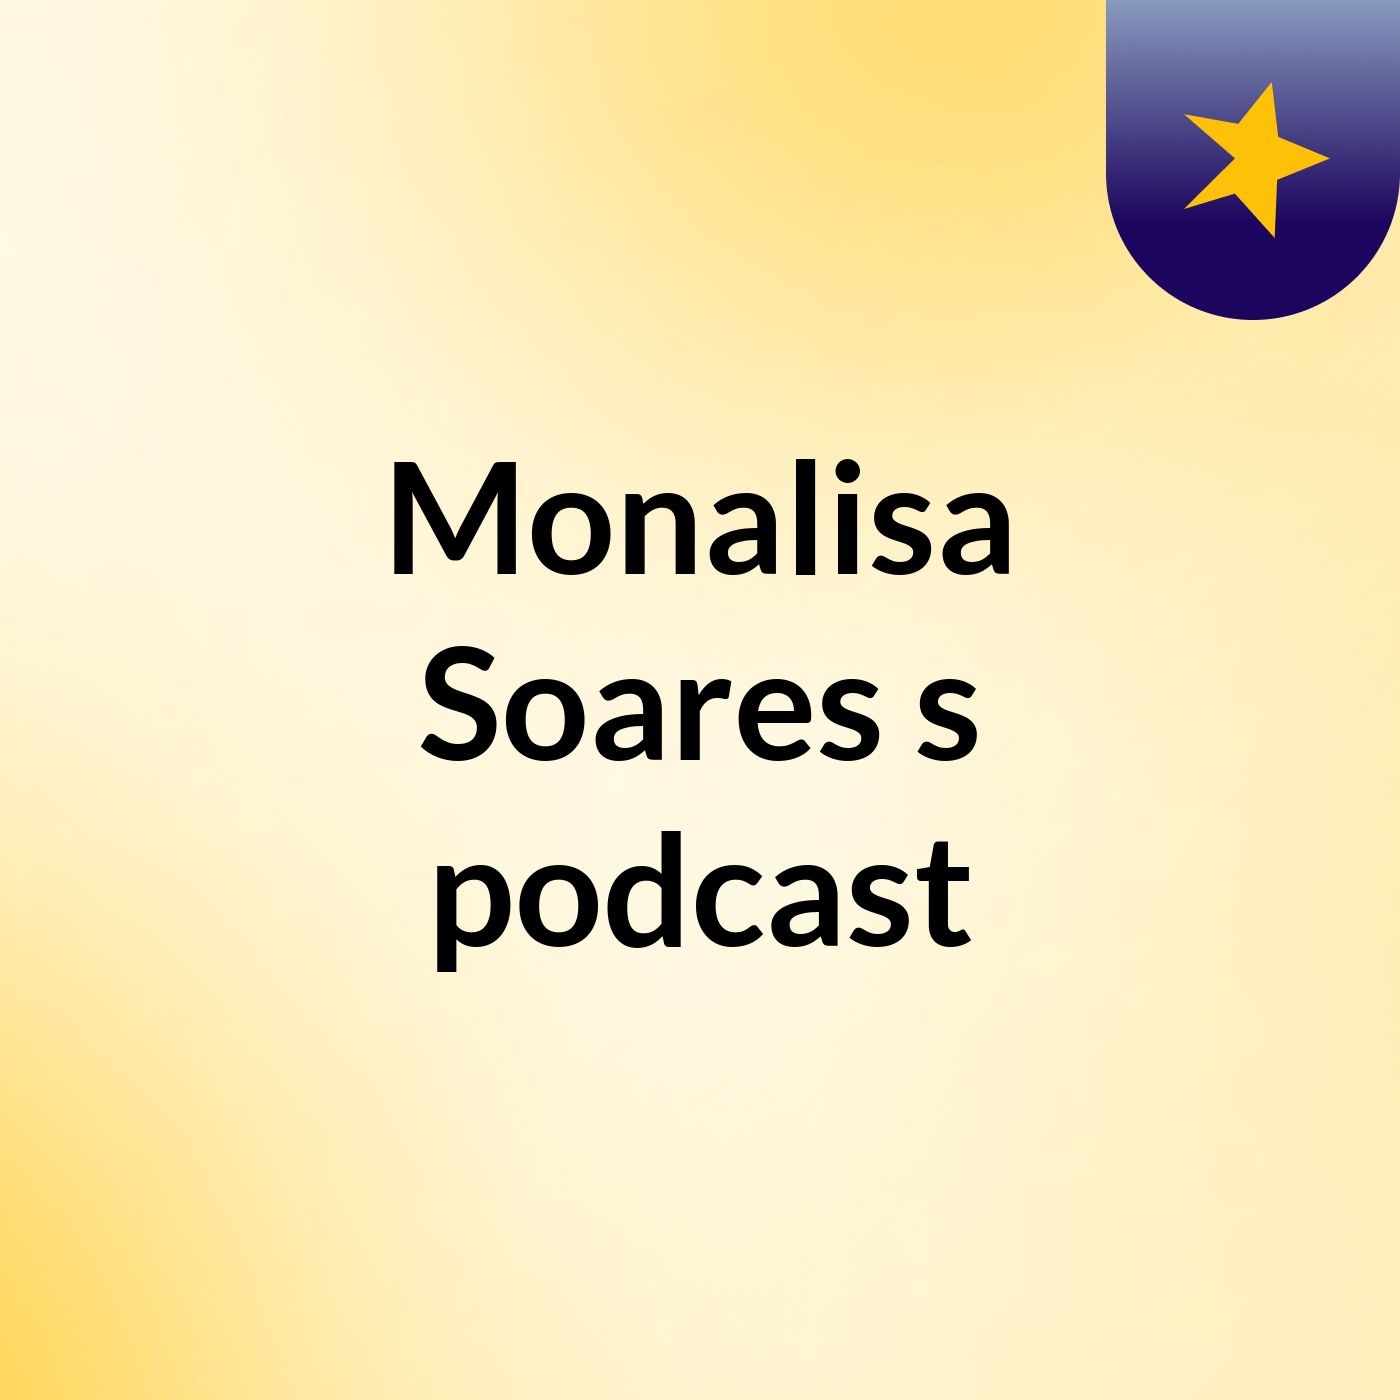 Monalisa Soares's podcast